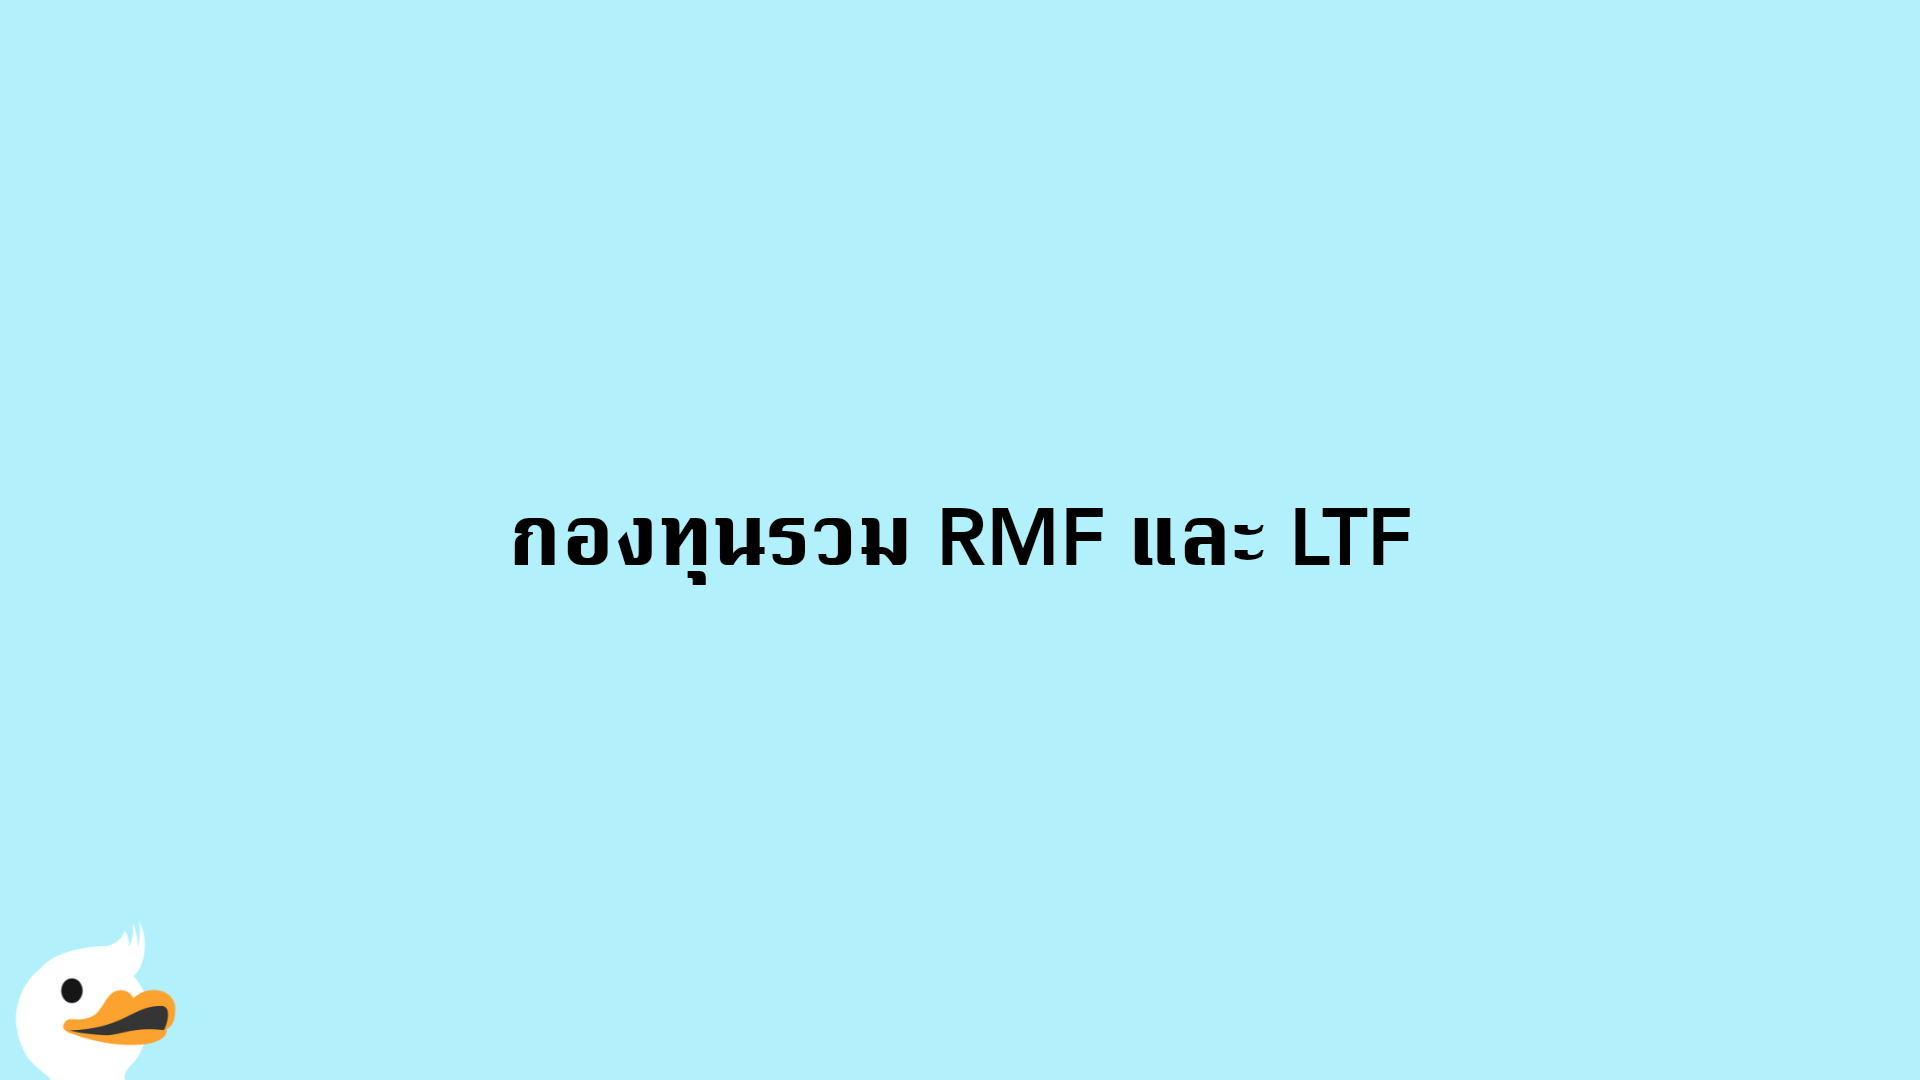 กองทุนรวม RMF และ LTF